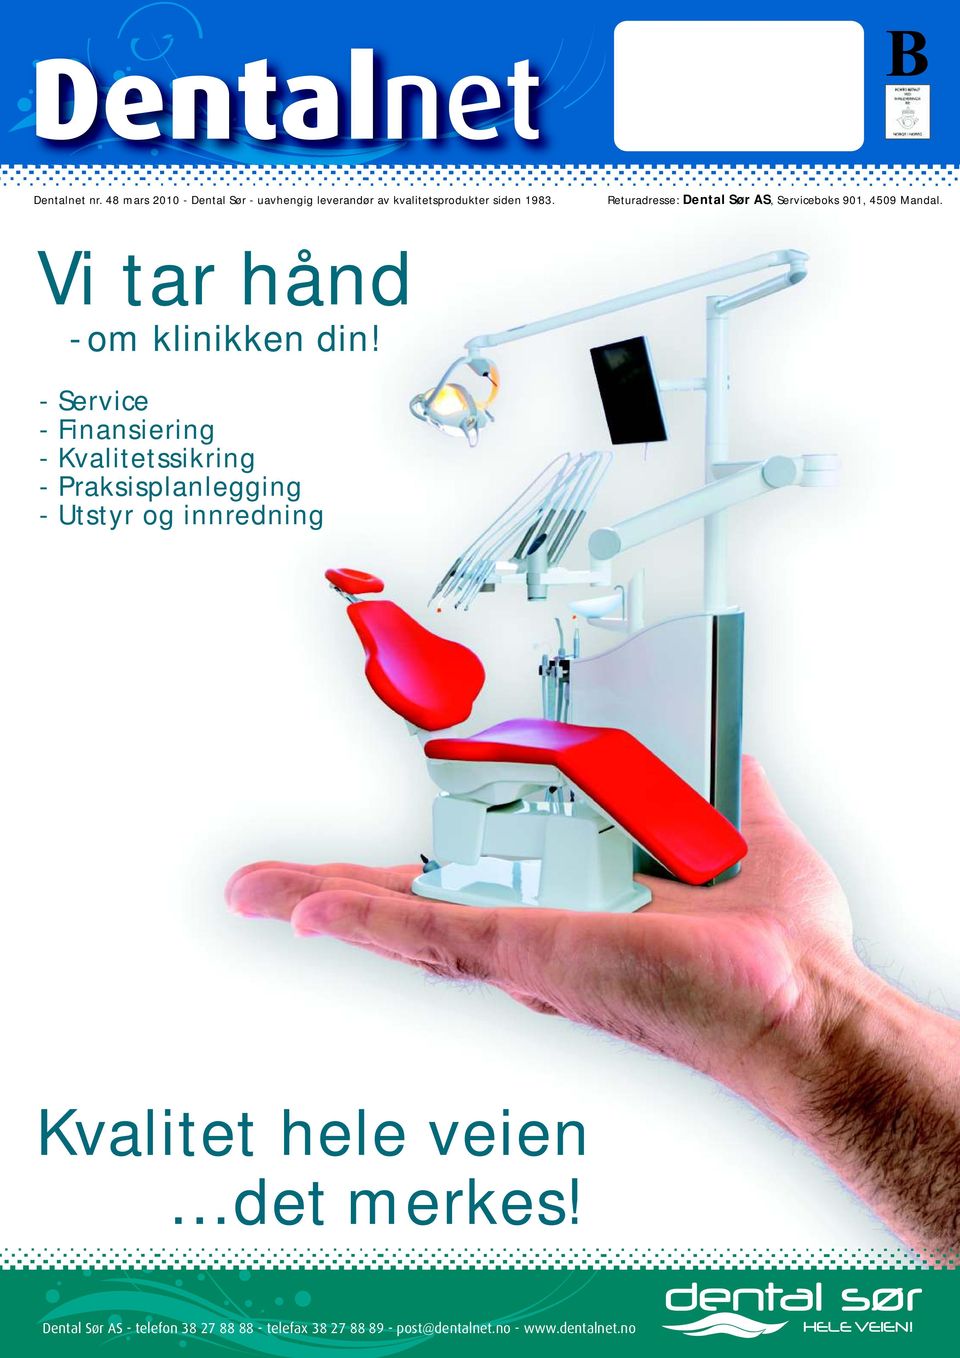 1983. Returadresse: Dental Sør AS, Serviceboks 901, 4509 Mandal.